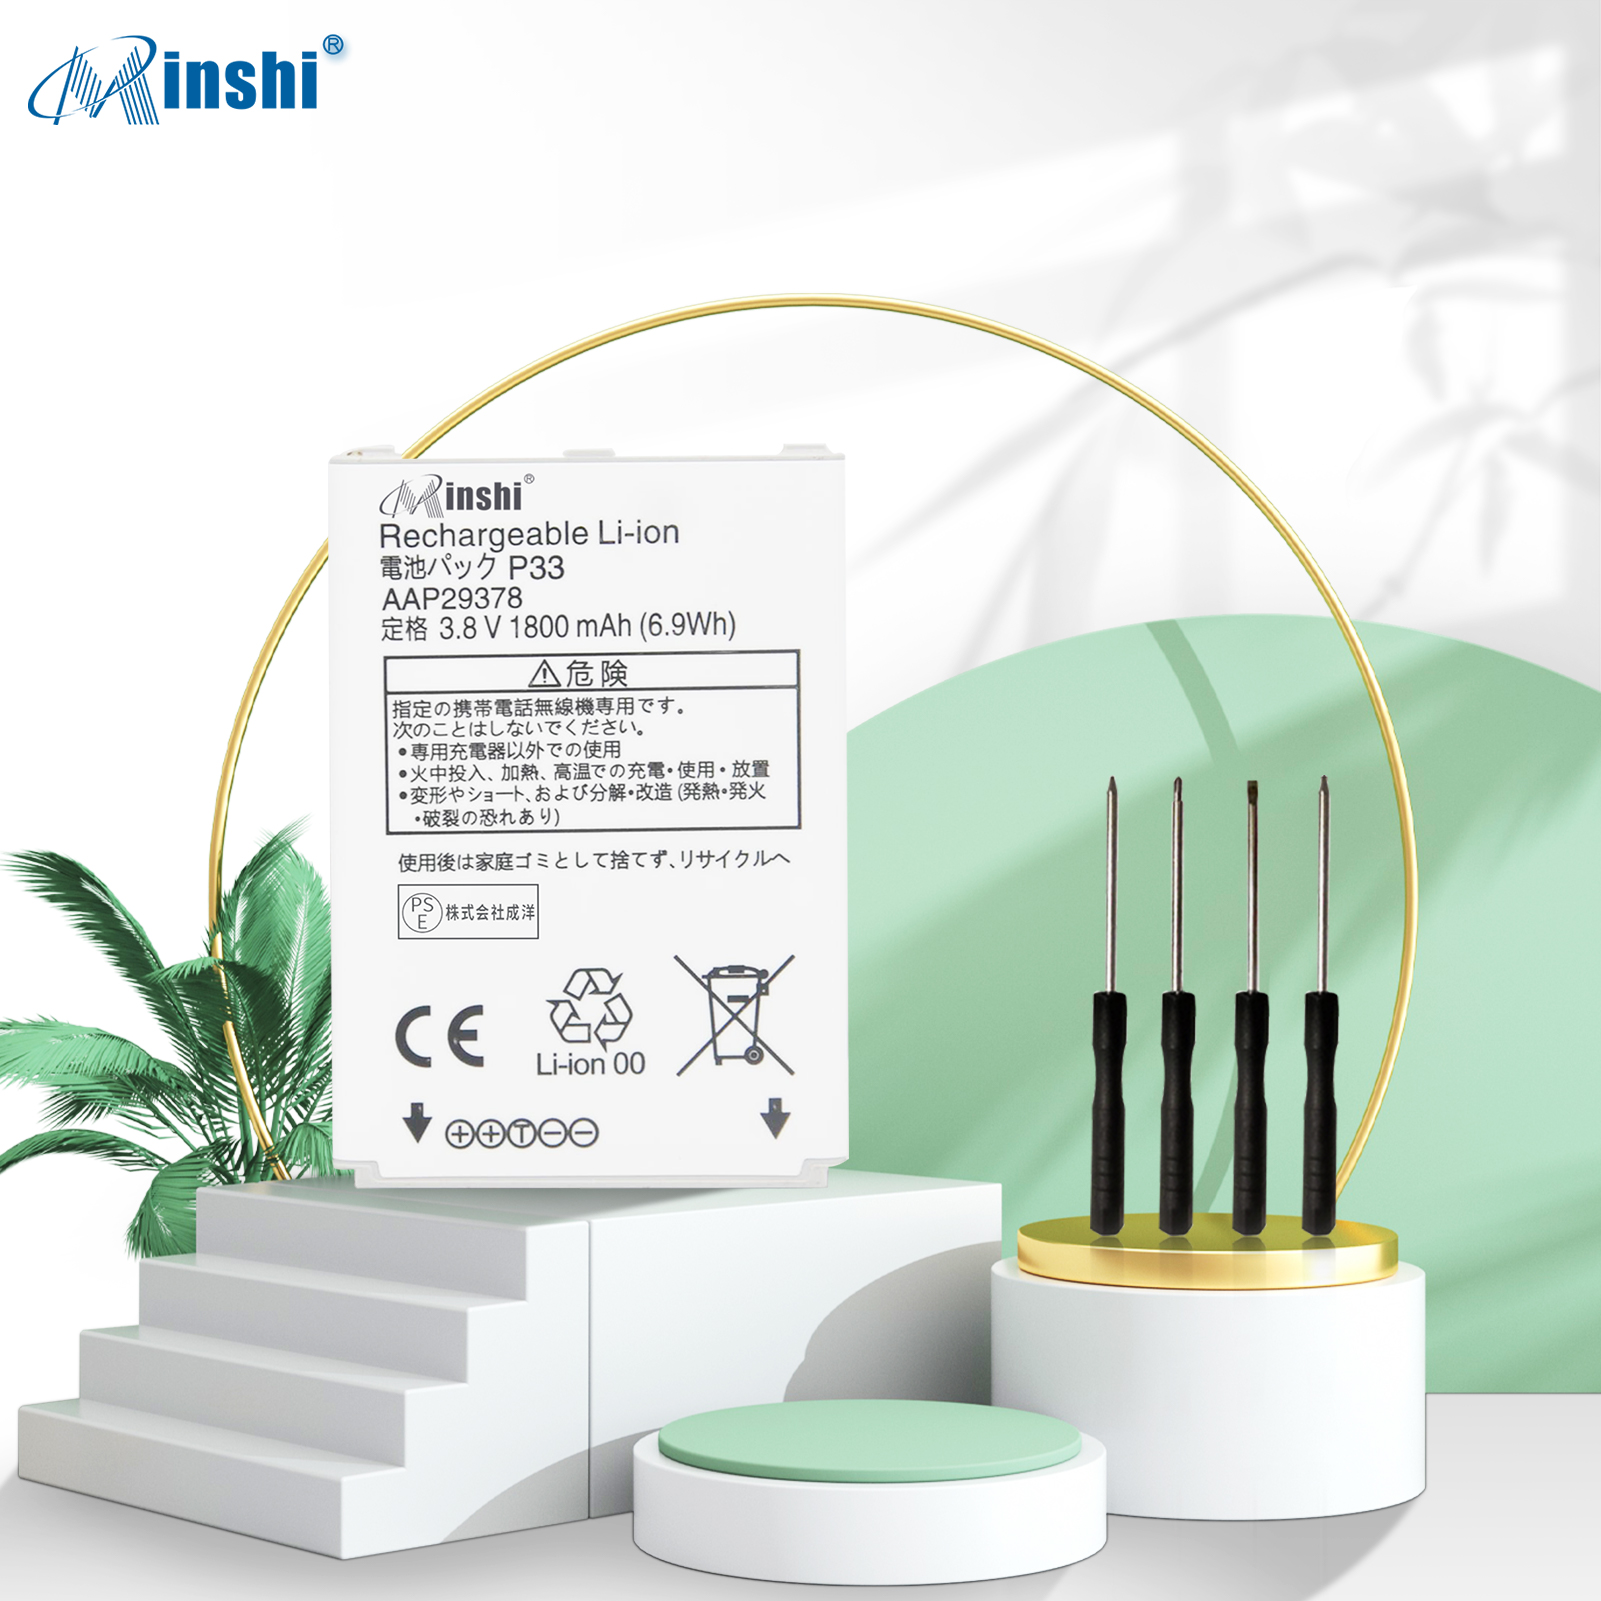  minshi PANASONIC P-01J 対応 互換バッテリー 1800mAh PSE認定済 高品質互換バッテリー